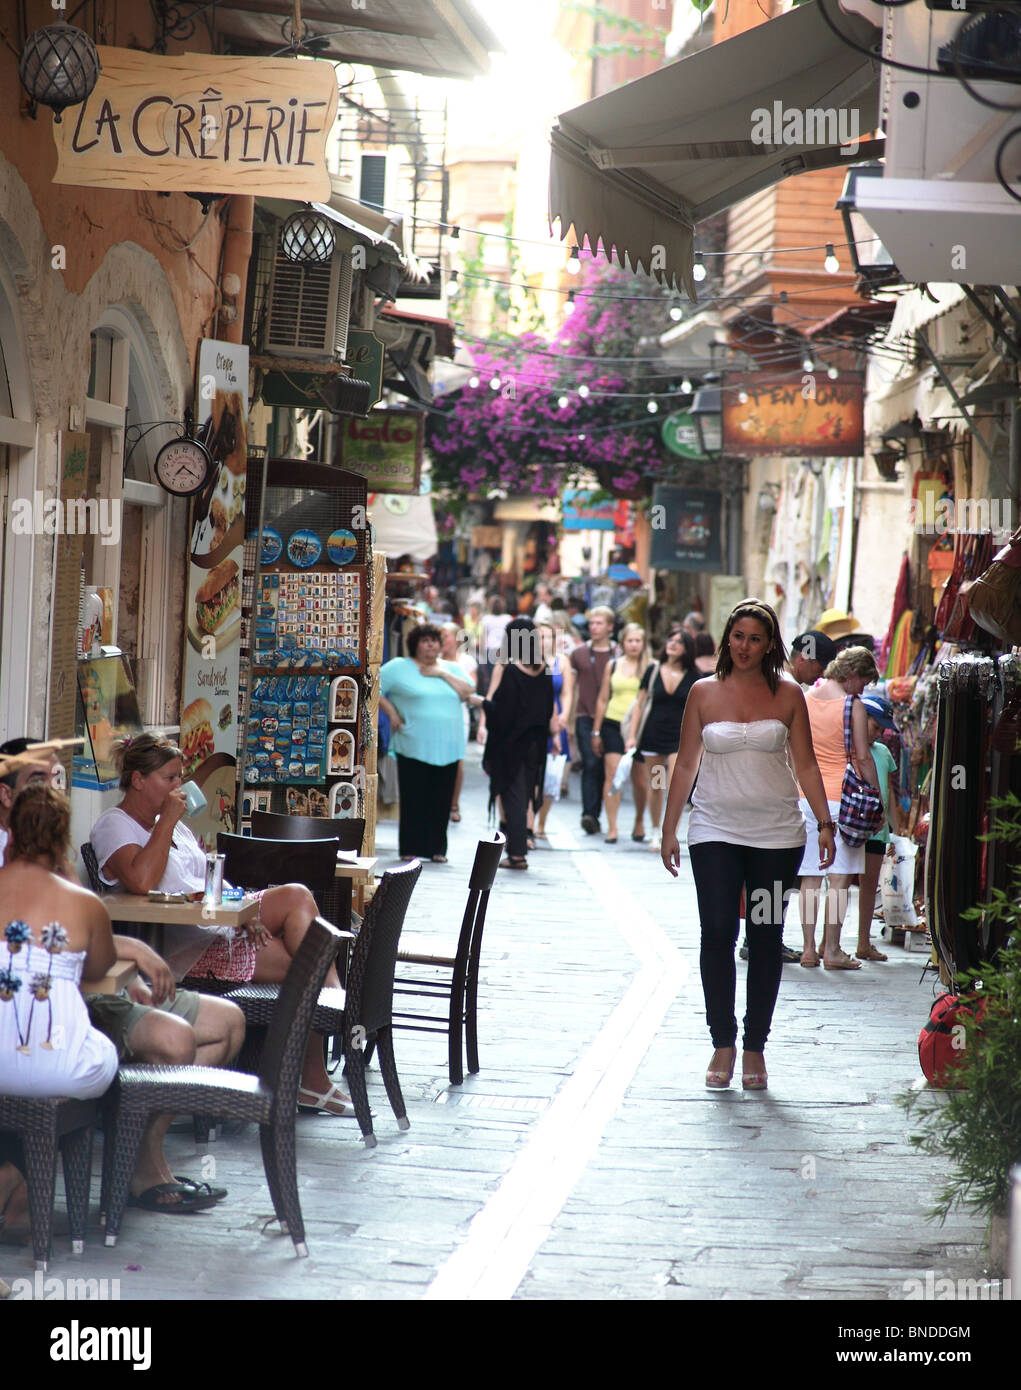 Une foule de touristes shopping alley dans les petites rues de la vieille ville de Rethymnon, Crète, Grèce, en début de soirée. Banque D'Images